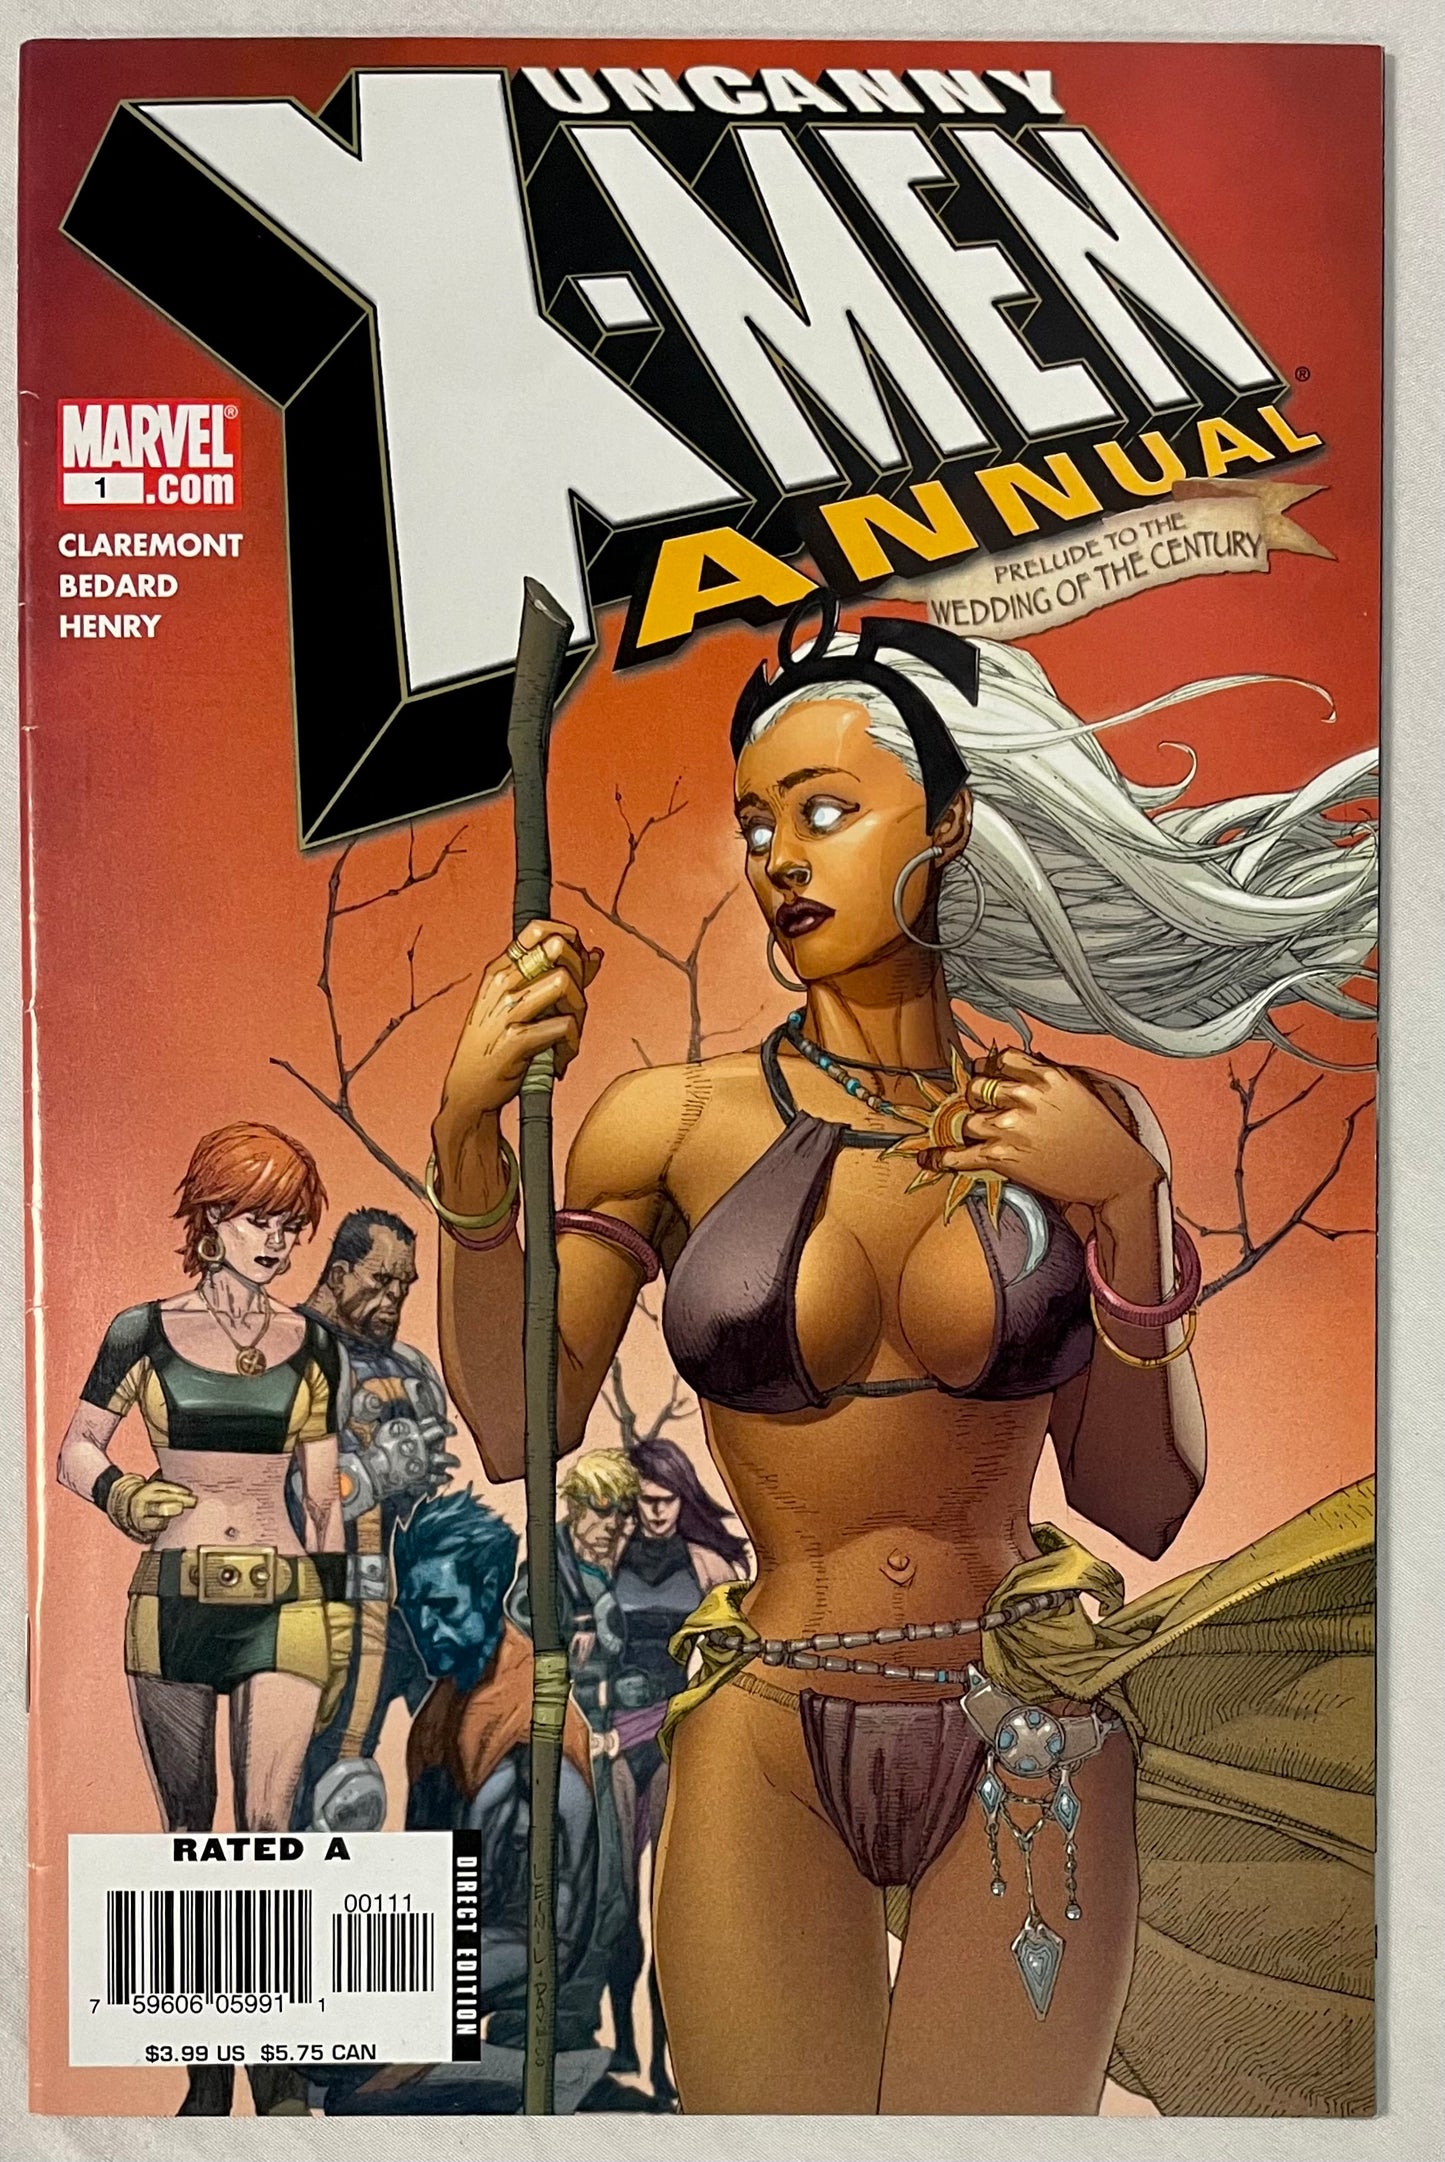 Marvel Comics Uncanny X-Men Annual #1